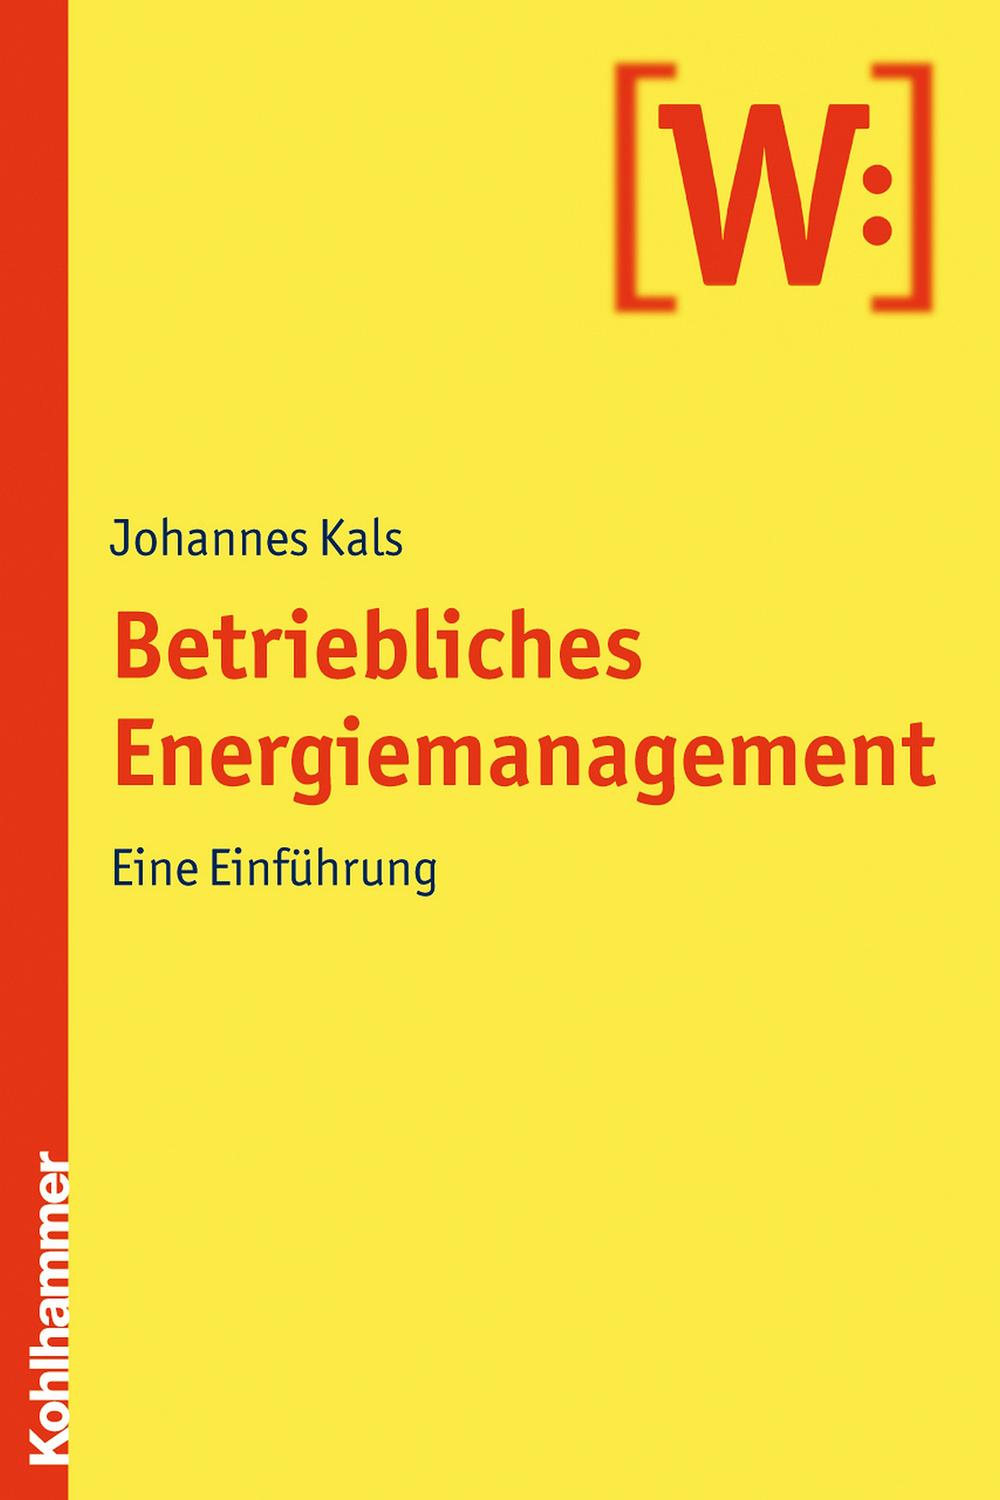 Betriebliches Energiemanagement - Johannes Kals